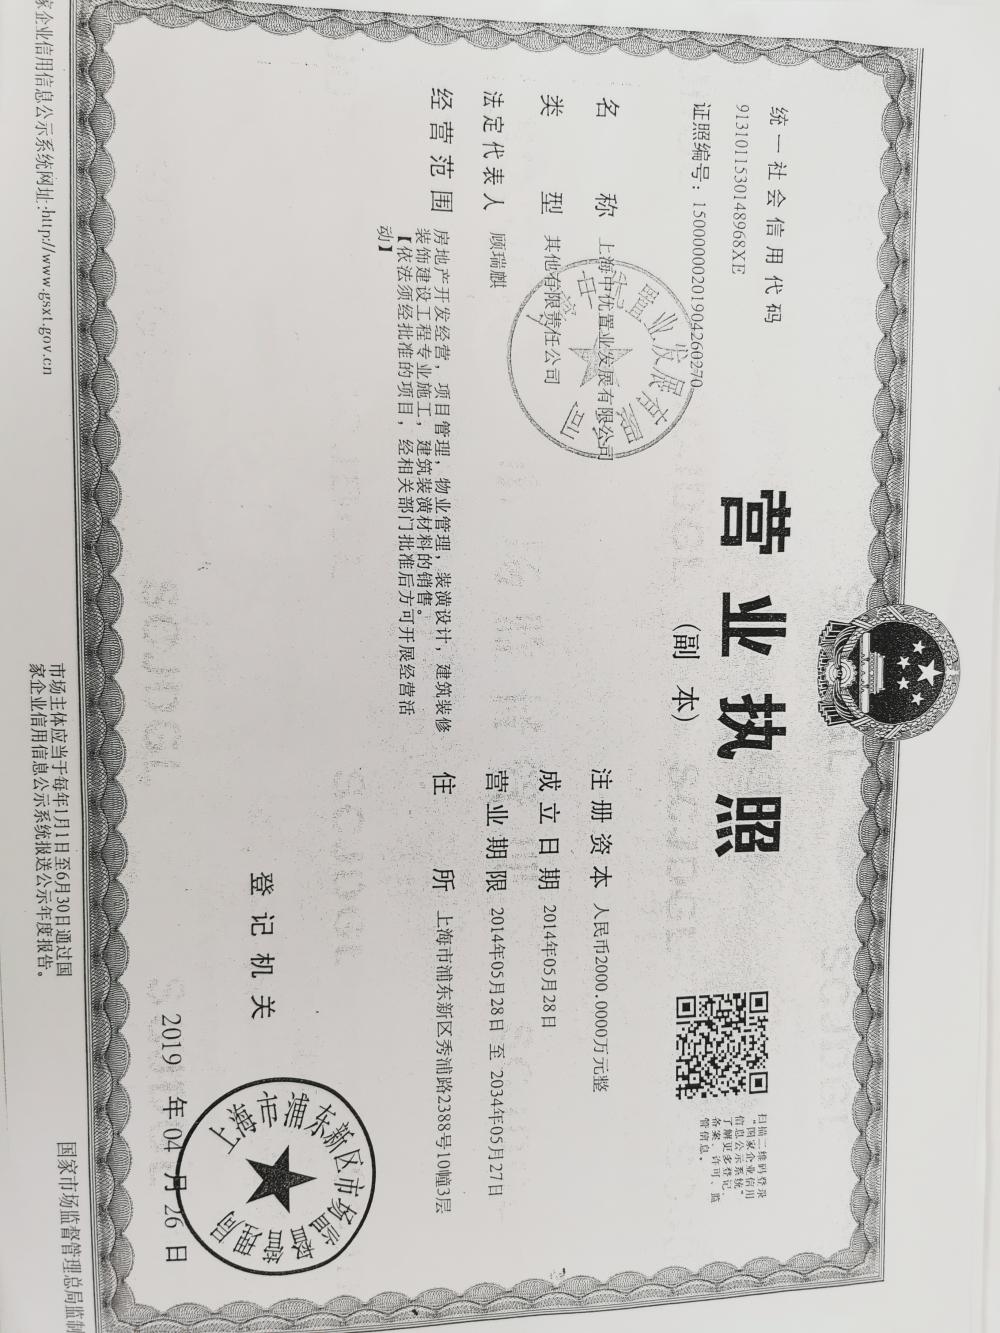 【上海市太平洋中环广场楼盘】房价,户型,开盘时间详情 开发商营业执照